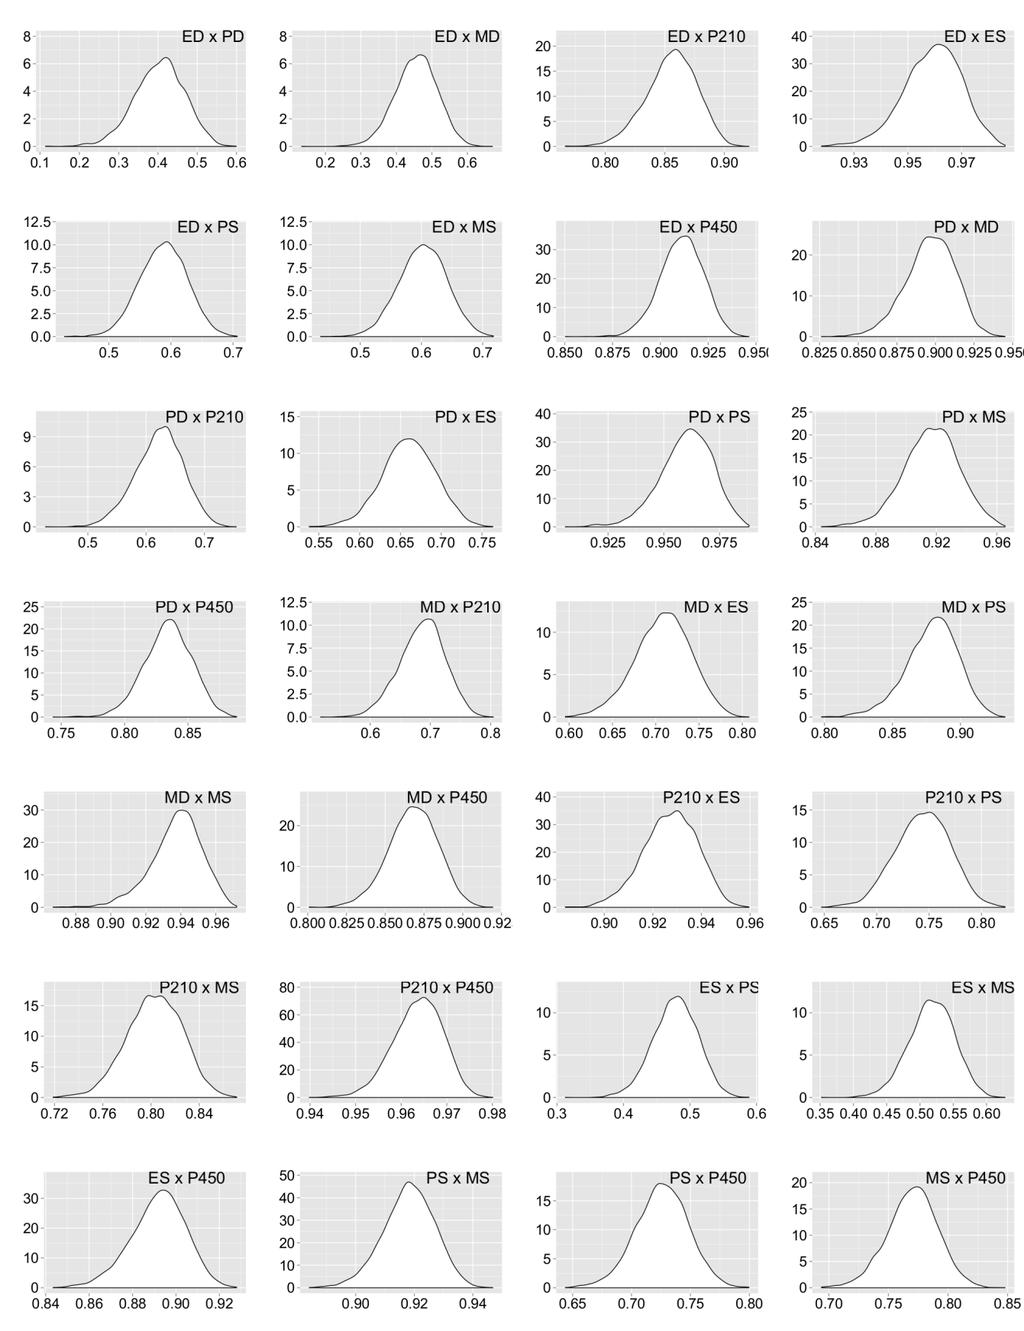 78 Densidade Correlação Genética Figura 10A: Distribuições das densidades a posteriori das estimativas de correlação genética obtidas em análise bi-característica para as